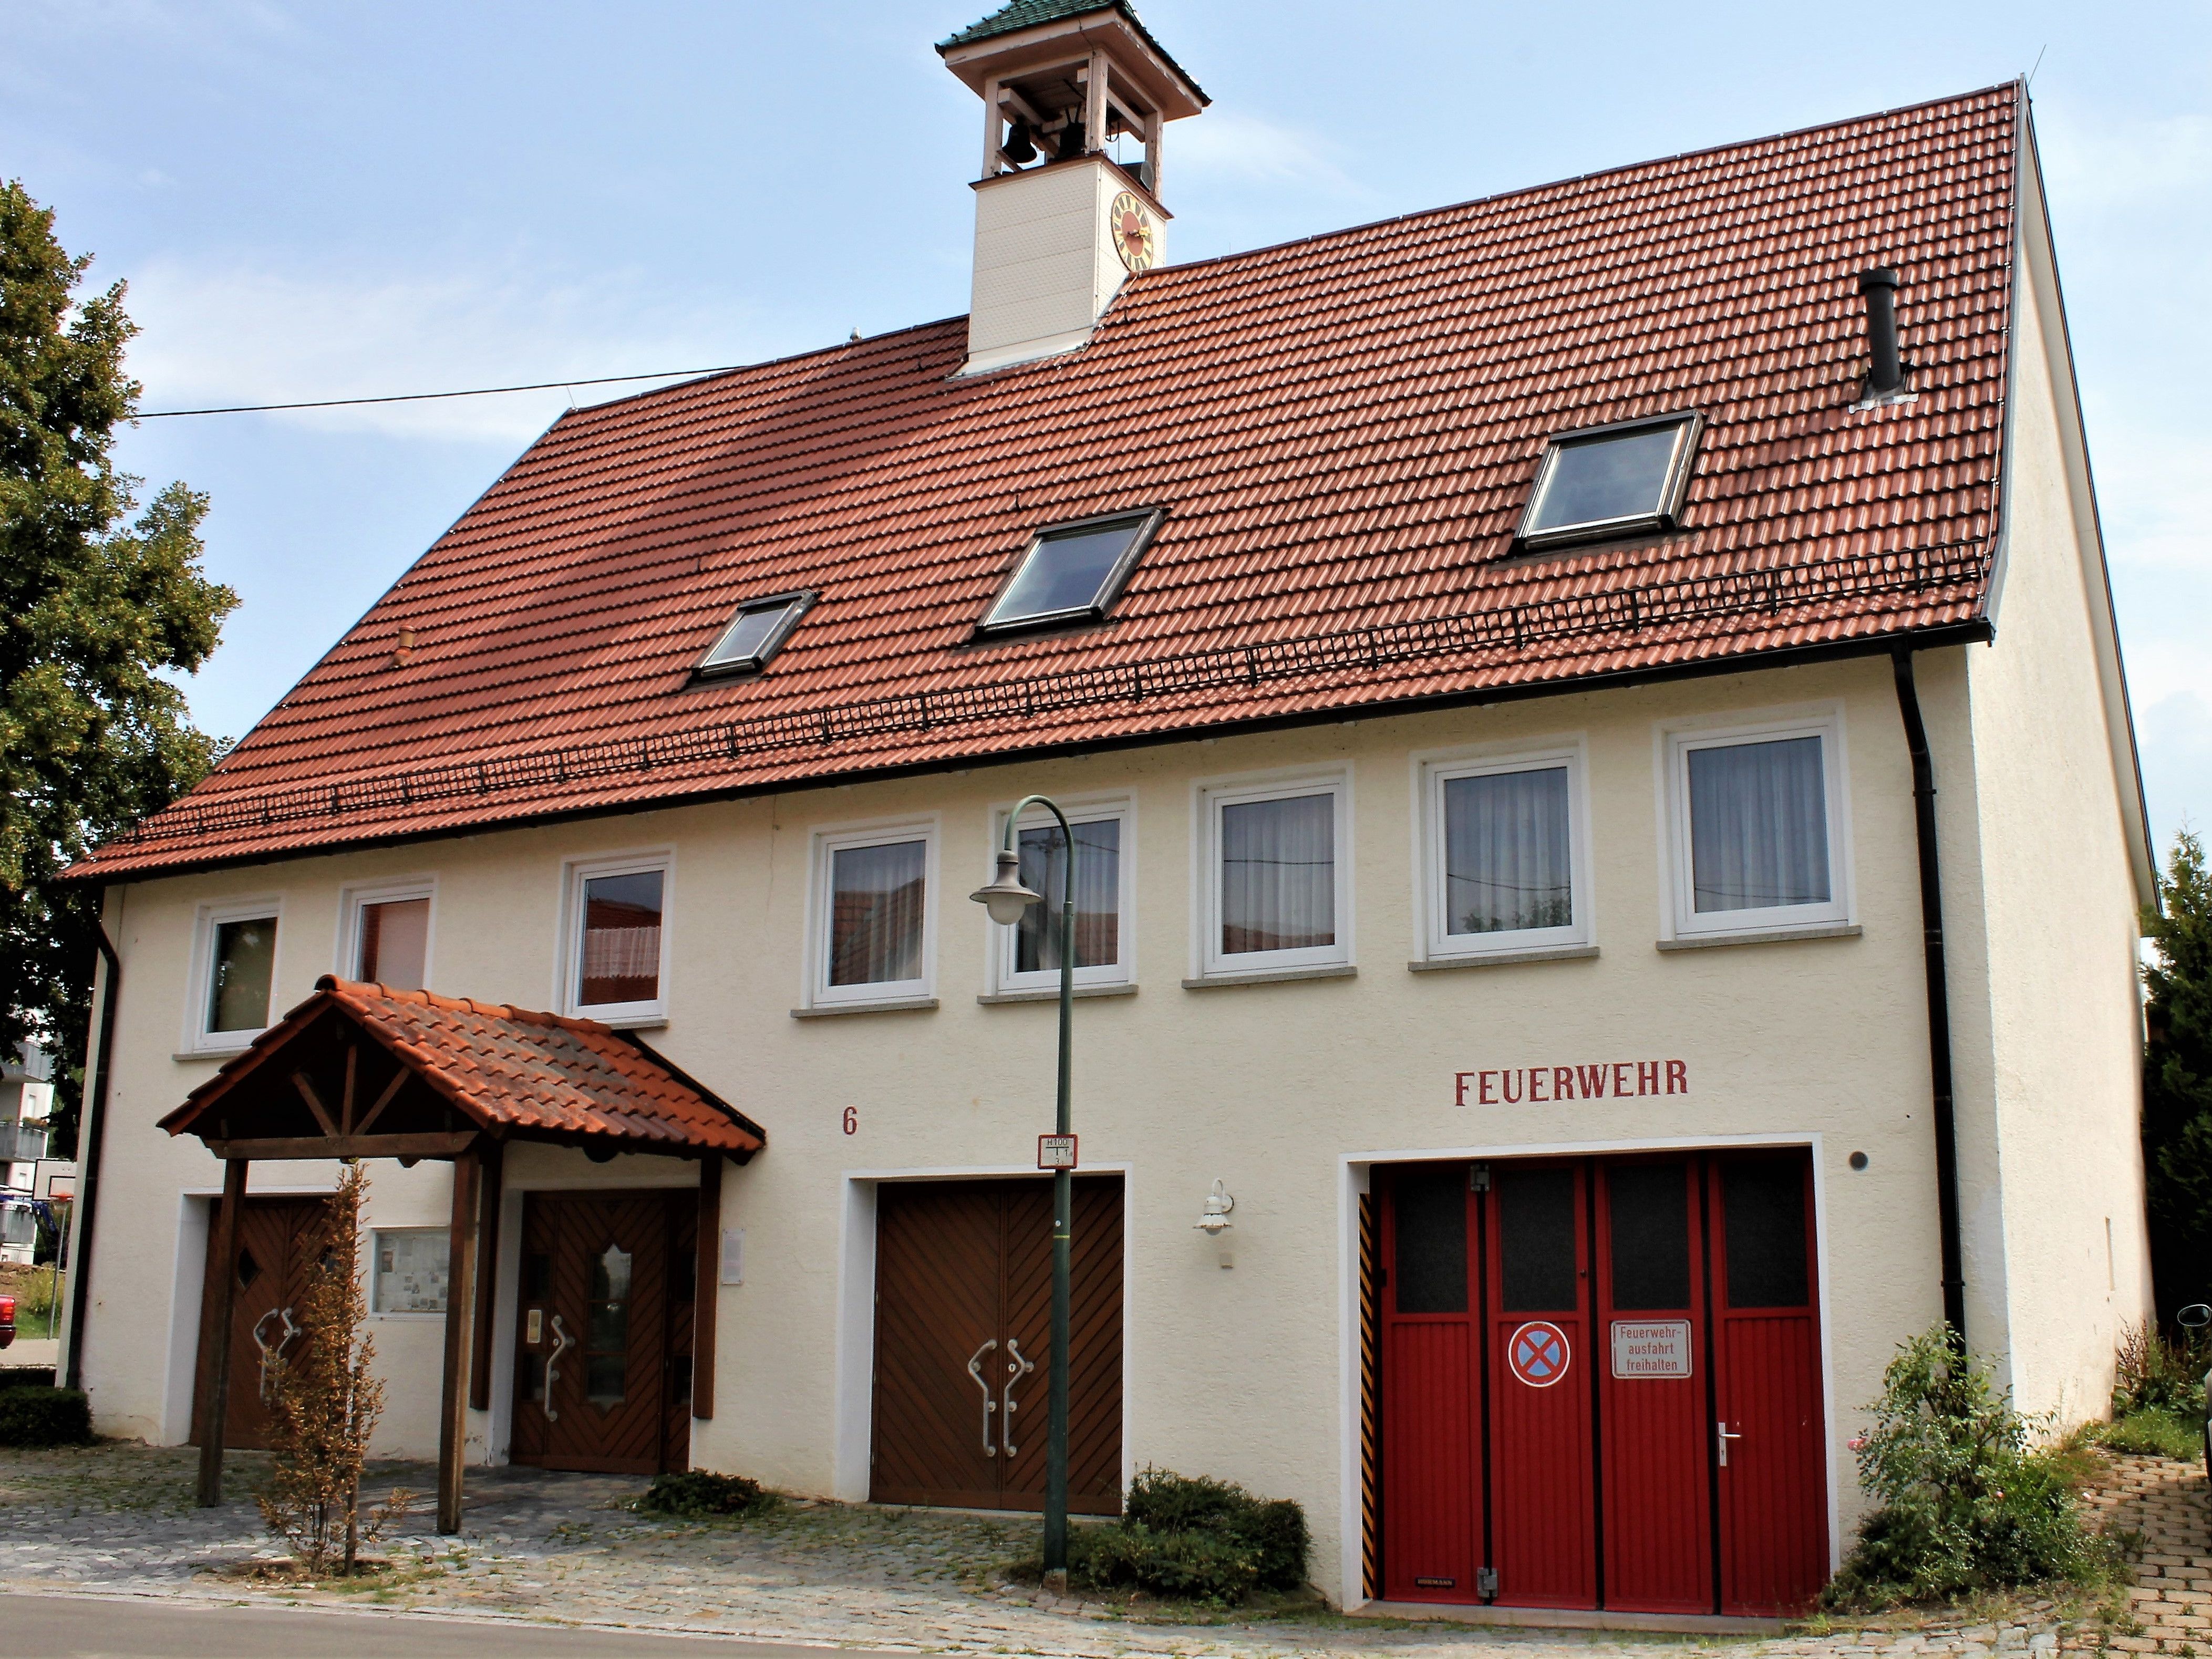 
    
        
                
                        Bürgerhaus Kleinbettlingen
                    
            
    
